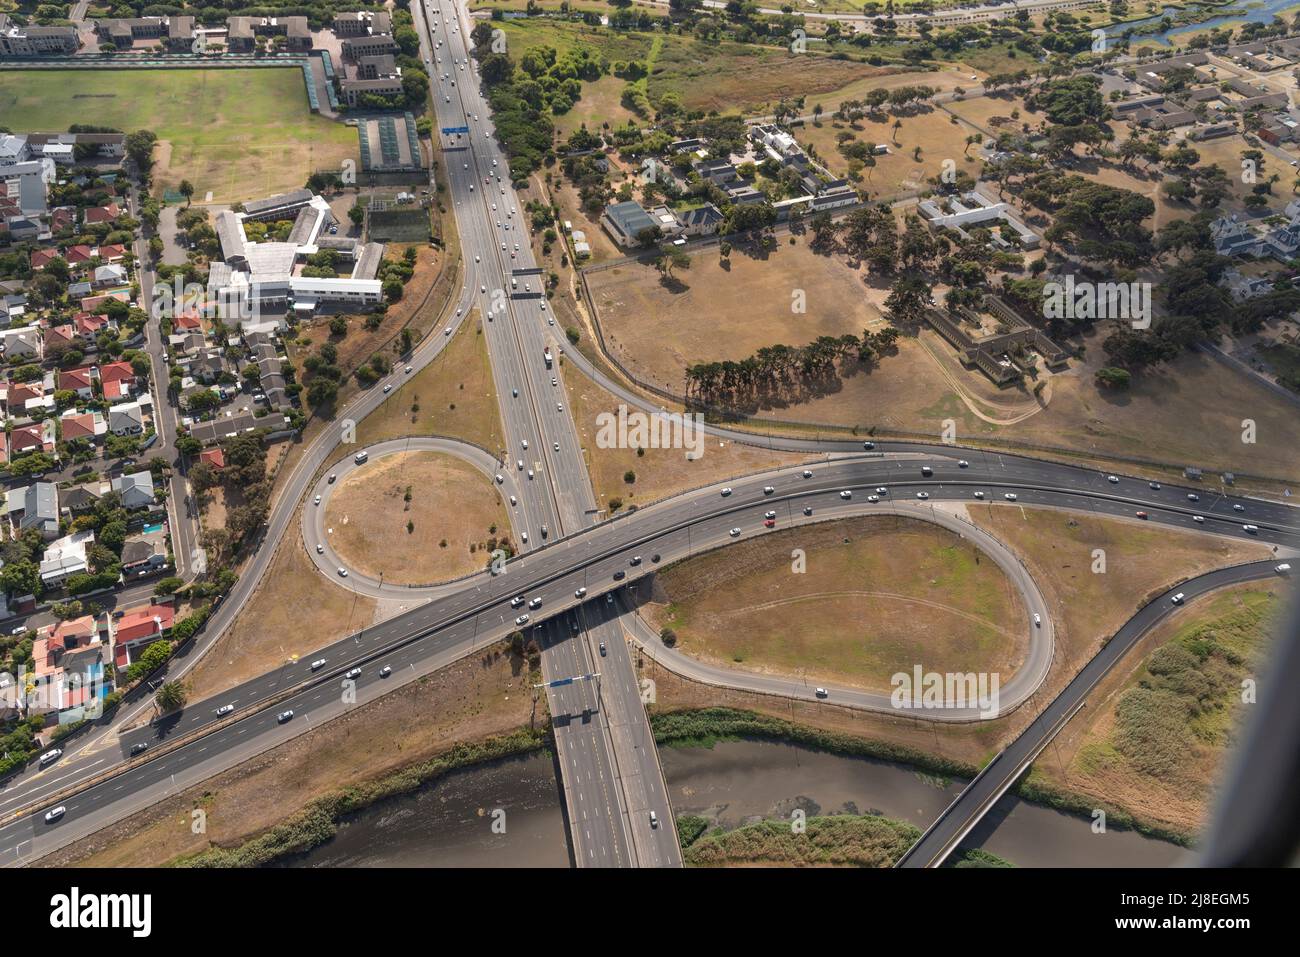 Kapstadt, Südafrika. 2022. Luftaufnahme der Highways M5 und N2 und des Valkenberg Hospitals oben rechts in der Nähe des Stadtzentrums von Kapstadt. Stockfoto